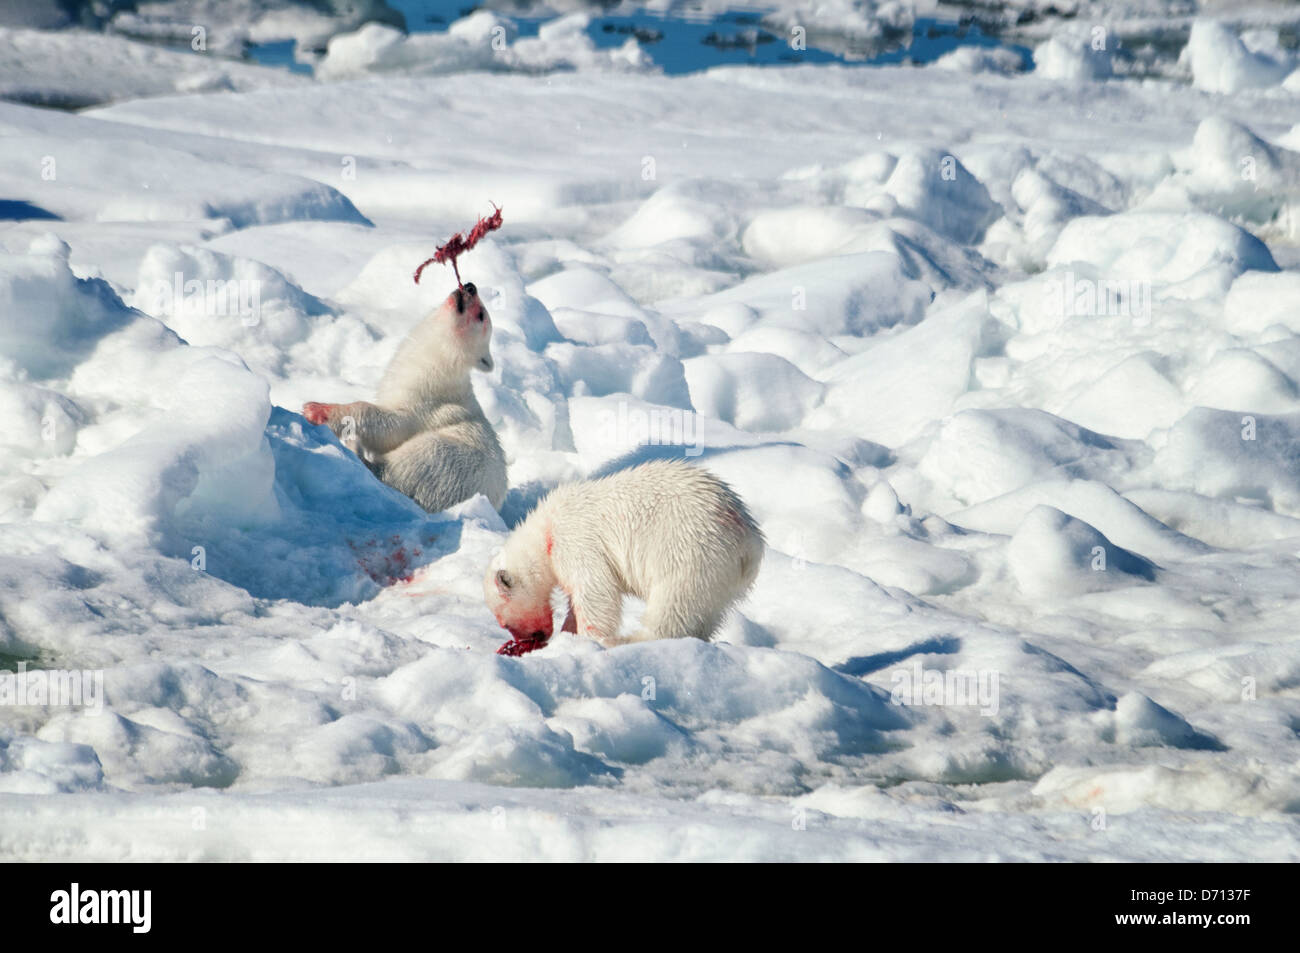 # 10 dans une série d'images d'une mère Ours blanc, Ursus maritimus, traquant un sceau pour nourrir ses deux oursons, Svalbard, Norvège. Recherche 'PBHunt' pour tous. Banque D'Images